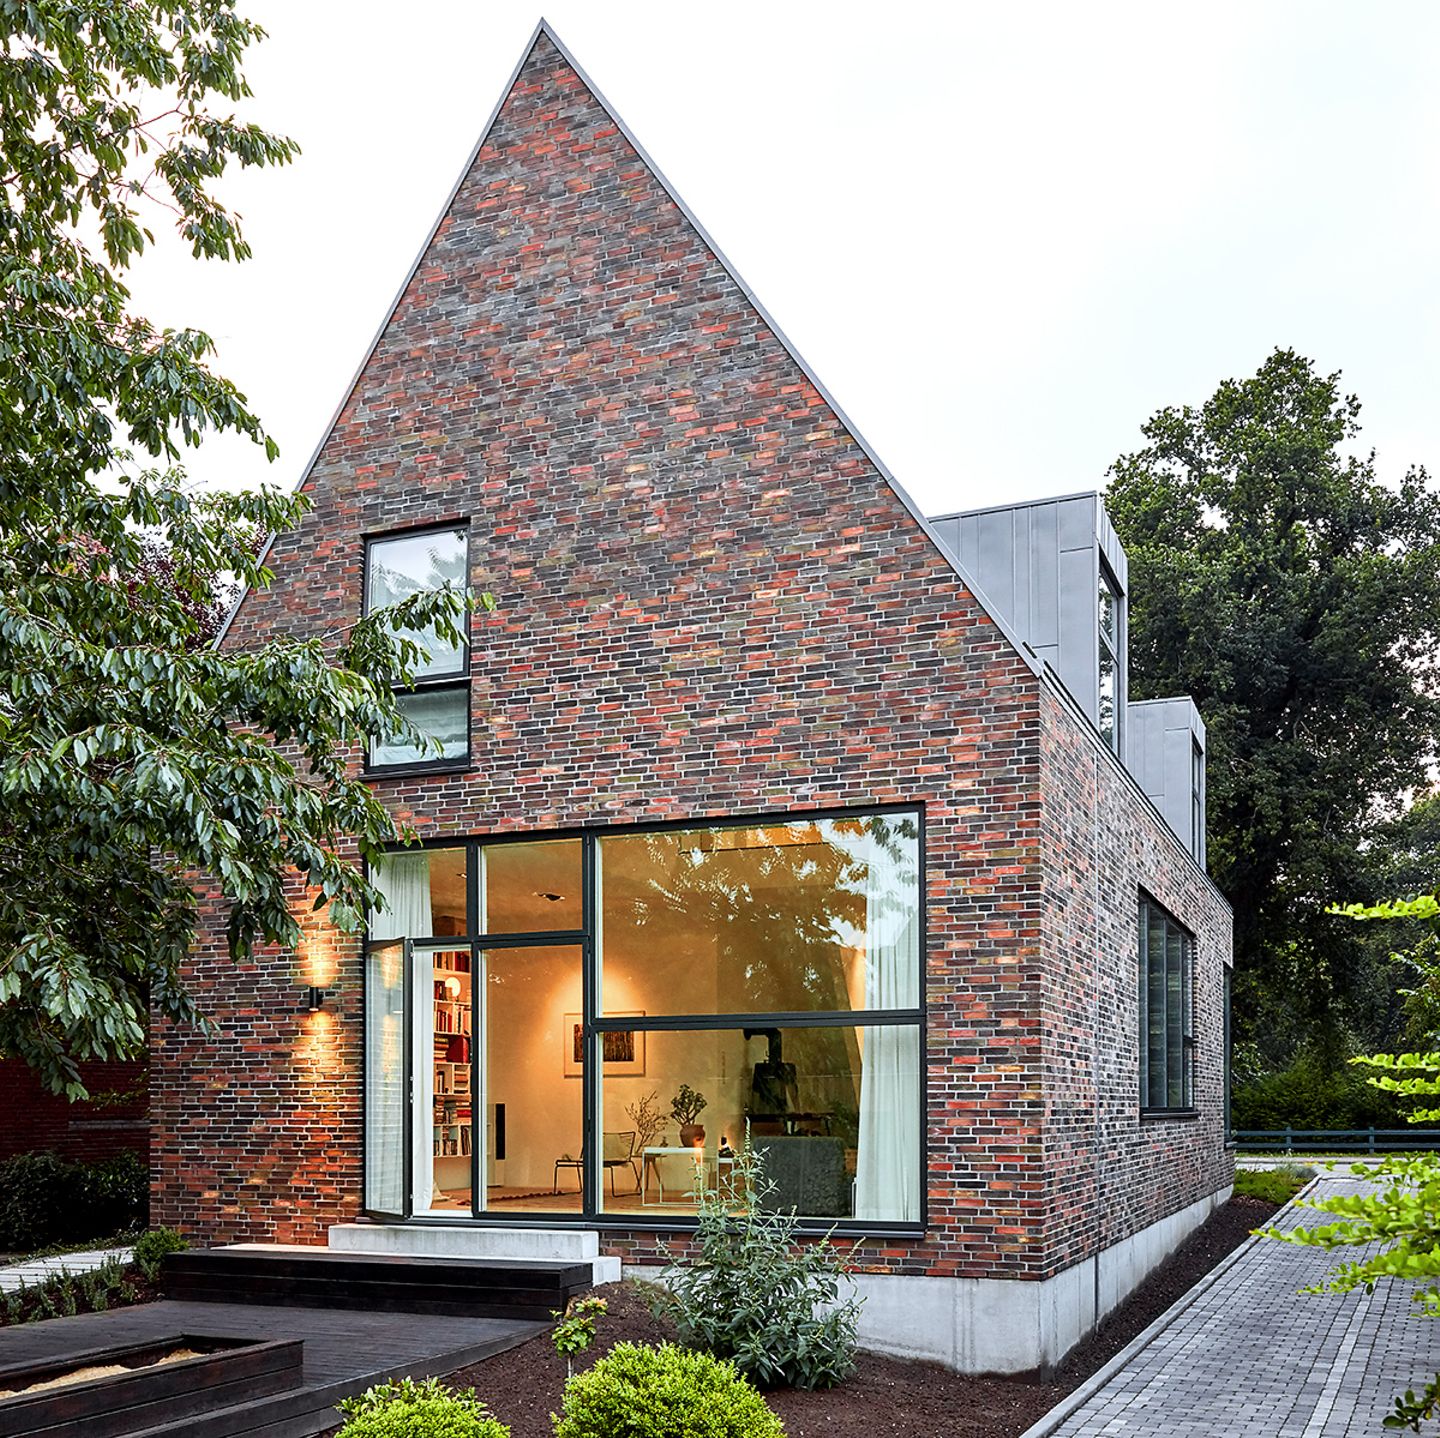 Einfamilienhaus mit Backsteinfassade, spitzem Satteldach und großem bodentiefem Fenster im Wohnzimmer